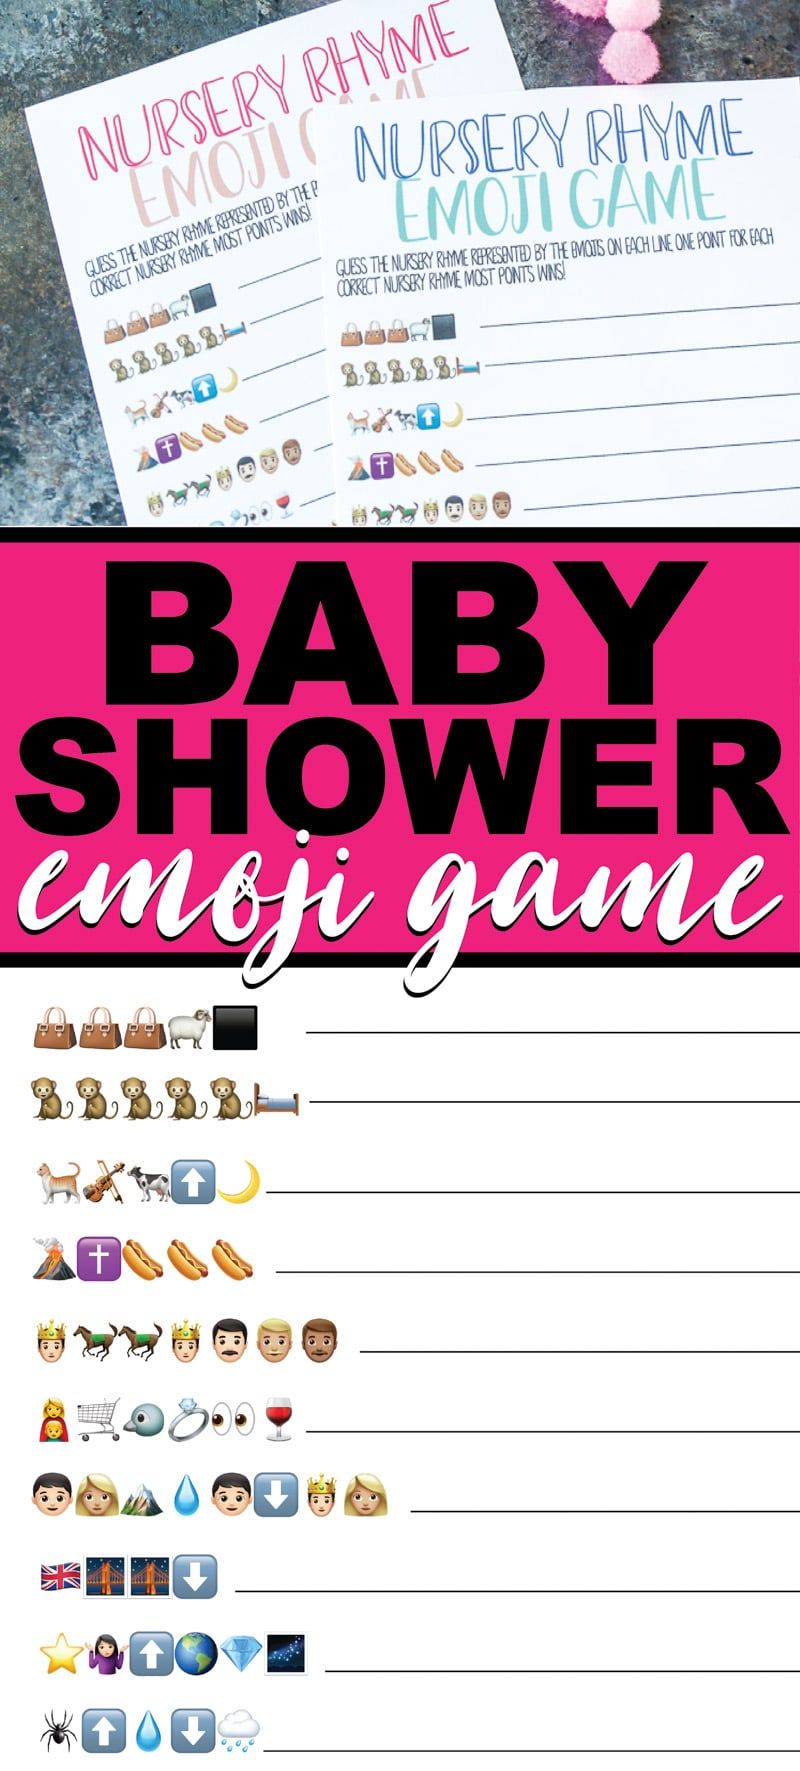 ¡Juegos de emoji de baby shower para imprimir gratis! Perfecto para una fiesta de baby shower. ¡Ideal para adultos o incluso para adolescentes en un baby shower!